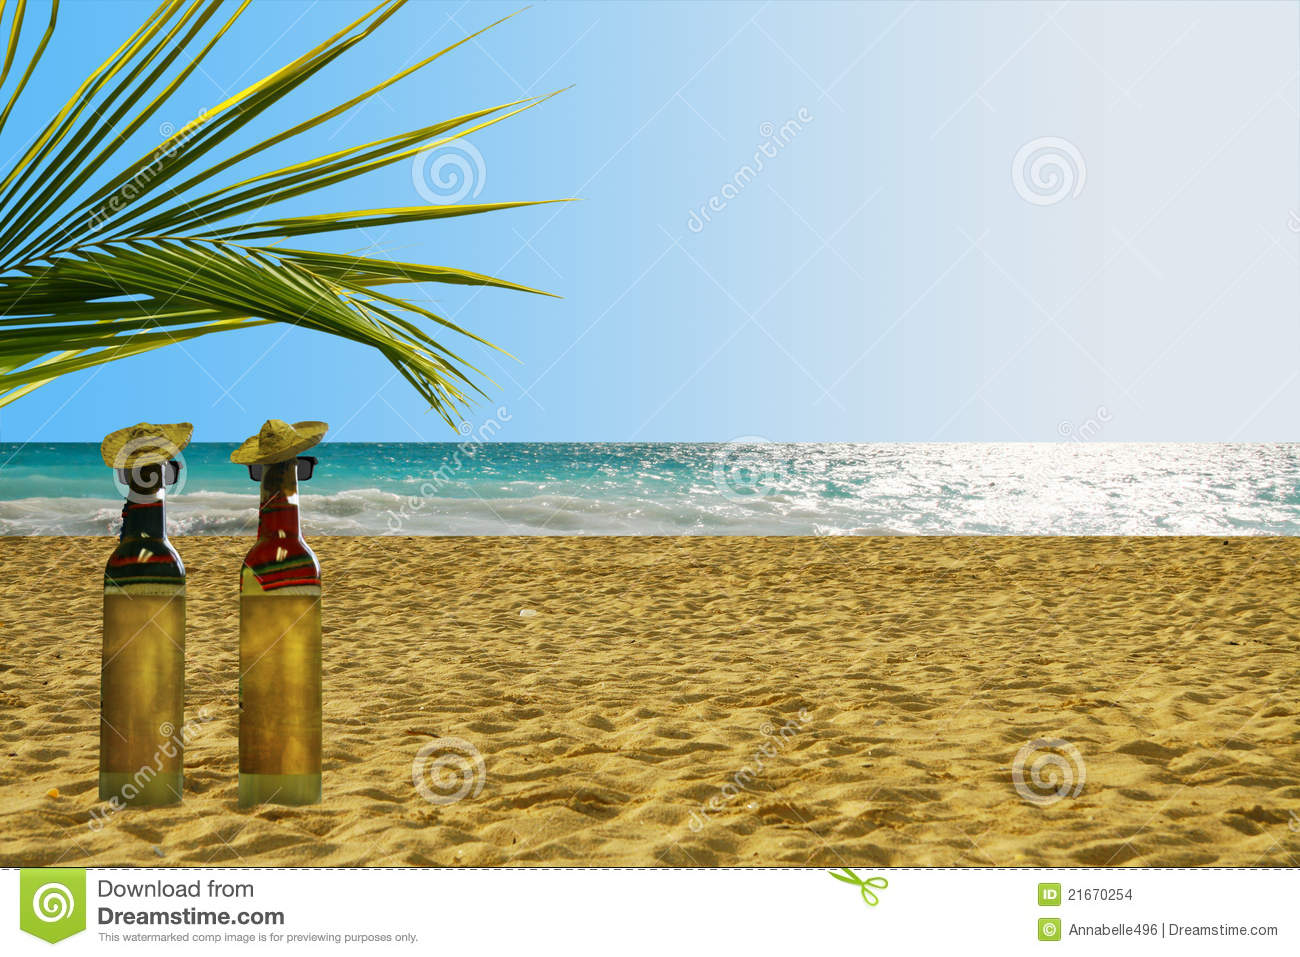 Botellas De Tequila En La Playa Imagenes De Archivo   Imagen  21670254